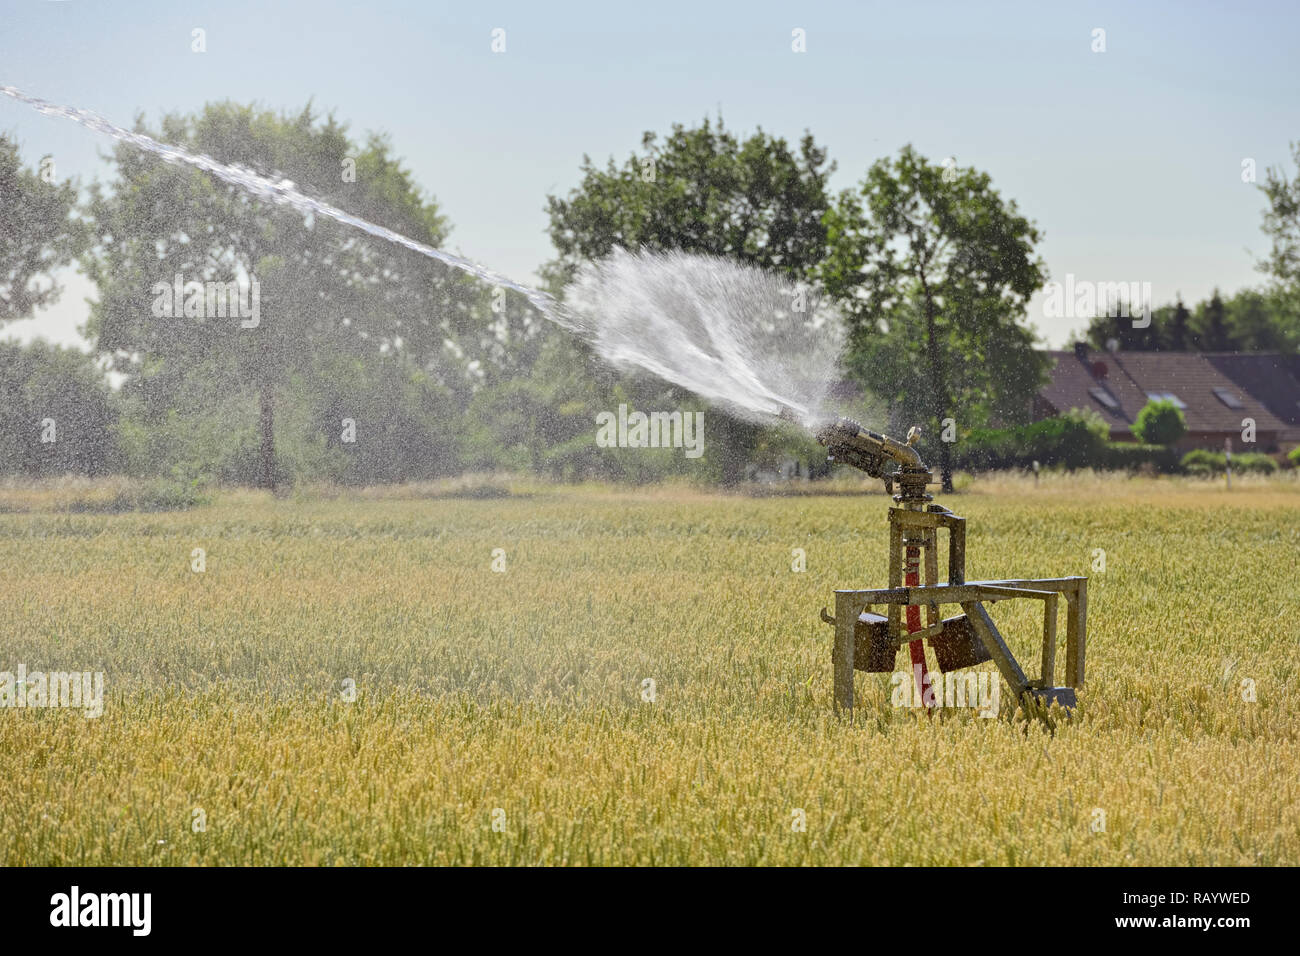 Tragbare Beregnung Maschine sprühen Wasser über Ackerland während einer Dürre im Sommer, heiße und trockene Sommer 2018, Europa. Stockfoto